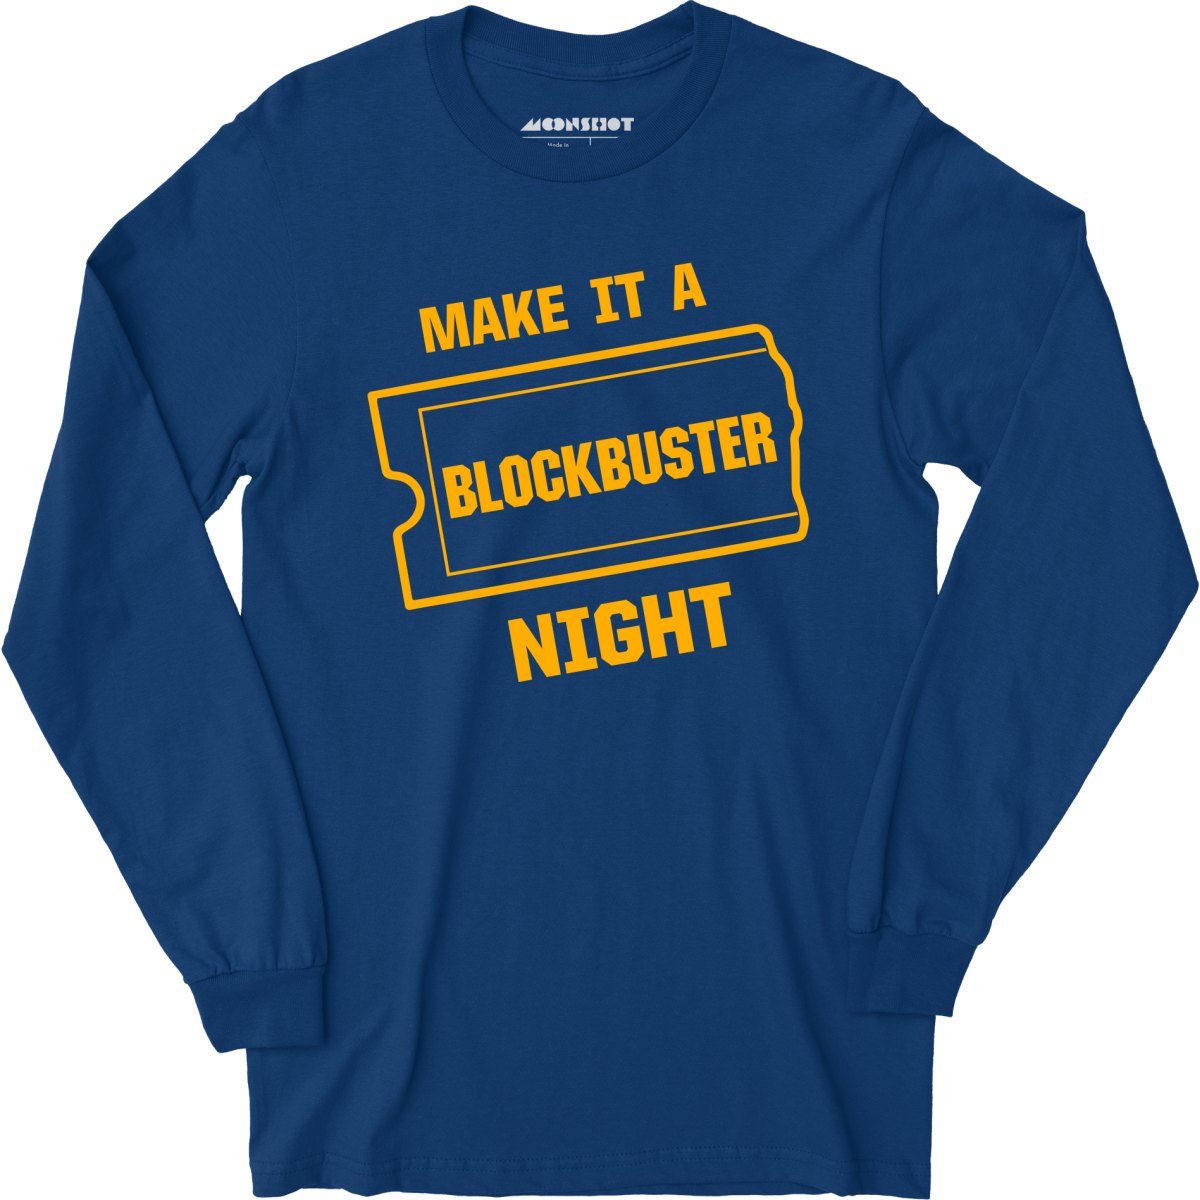 Make it a Blockbuster Night - Long Sleeve T-Shirt